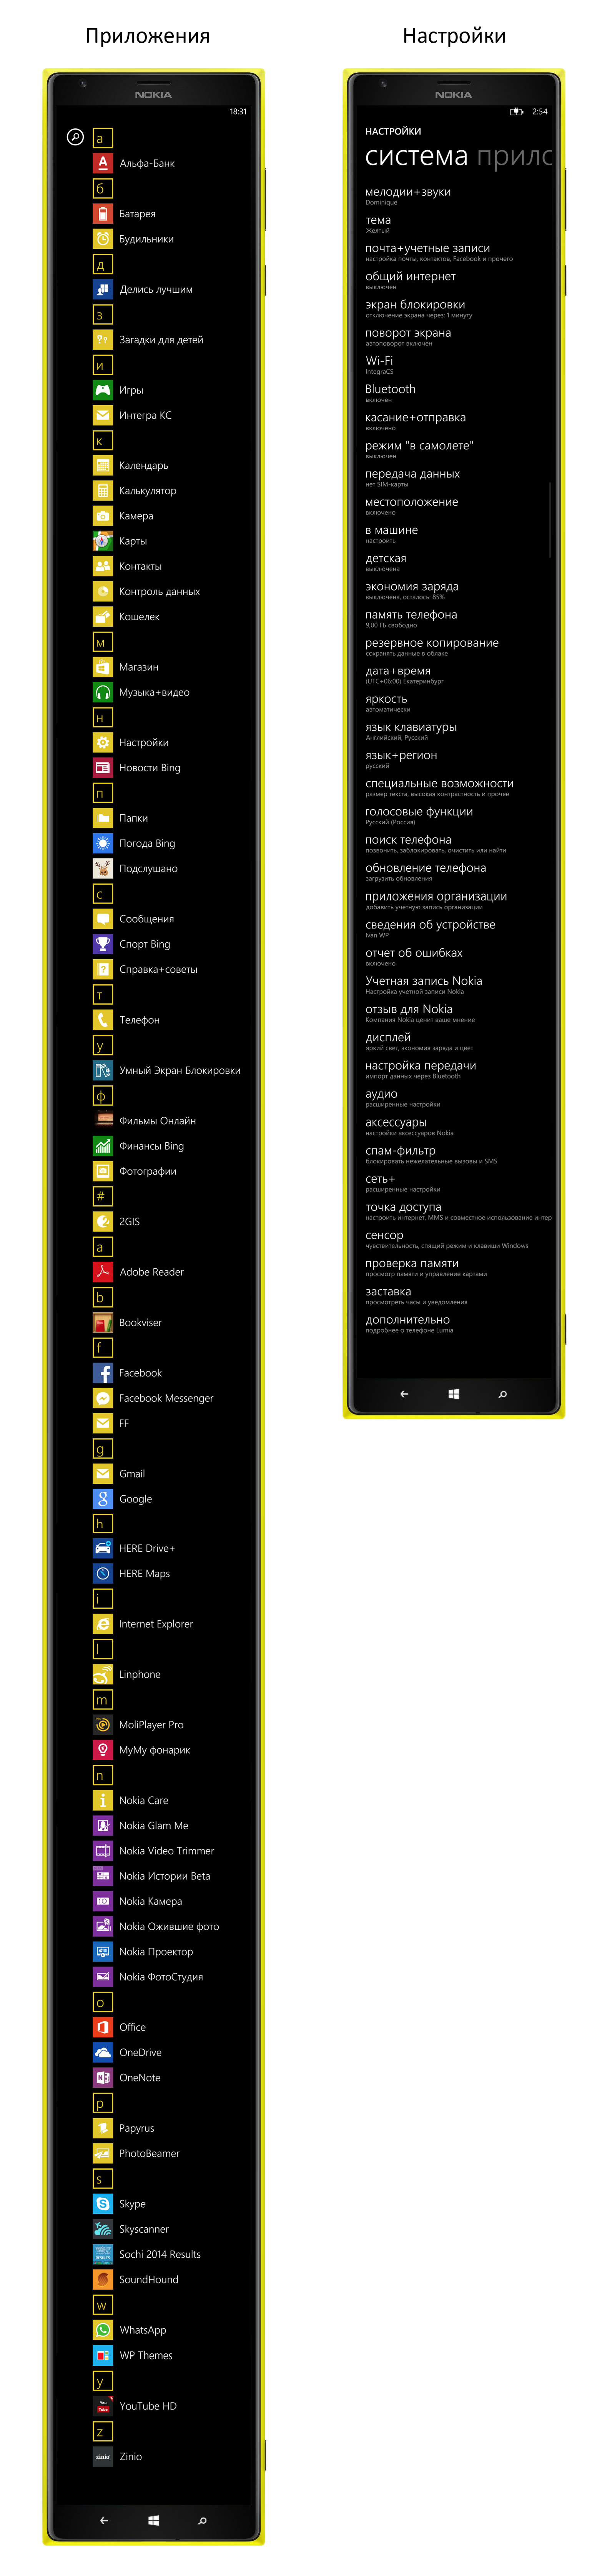 Некоторые проблемы Nokia Lumia 1520 в одном посте